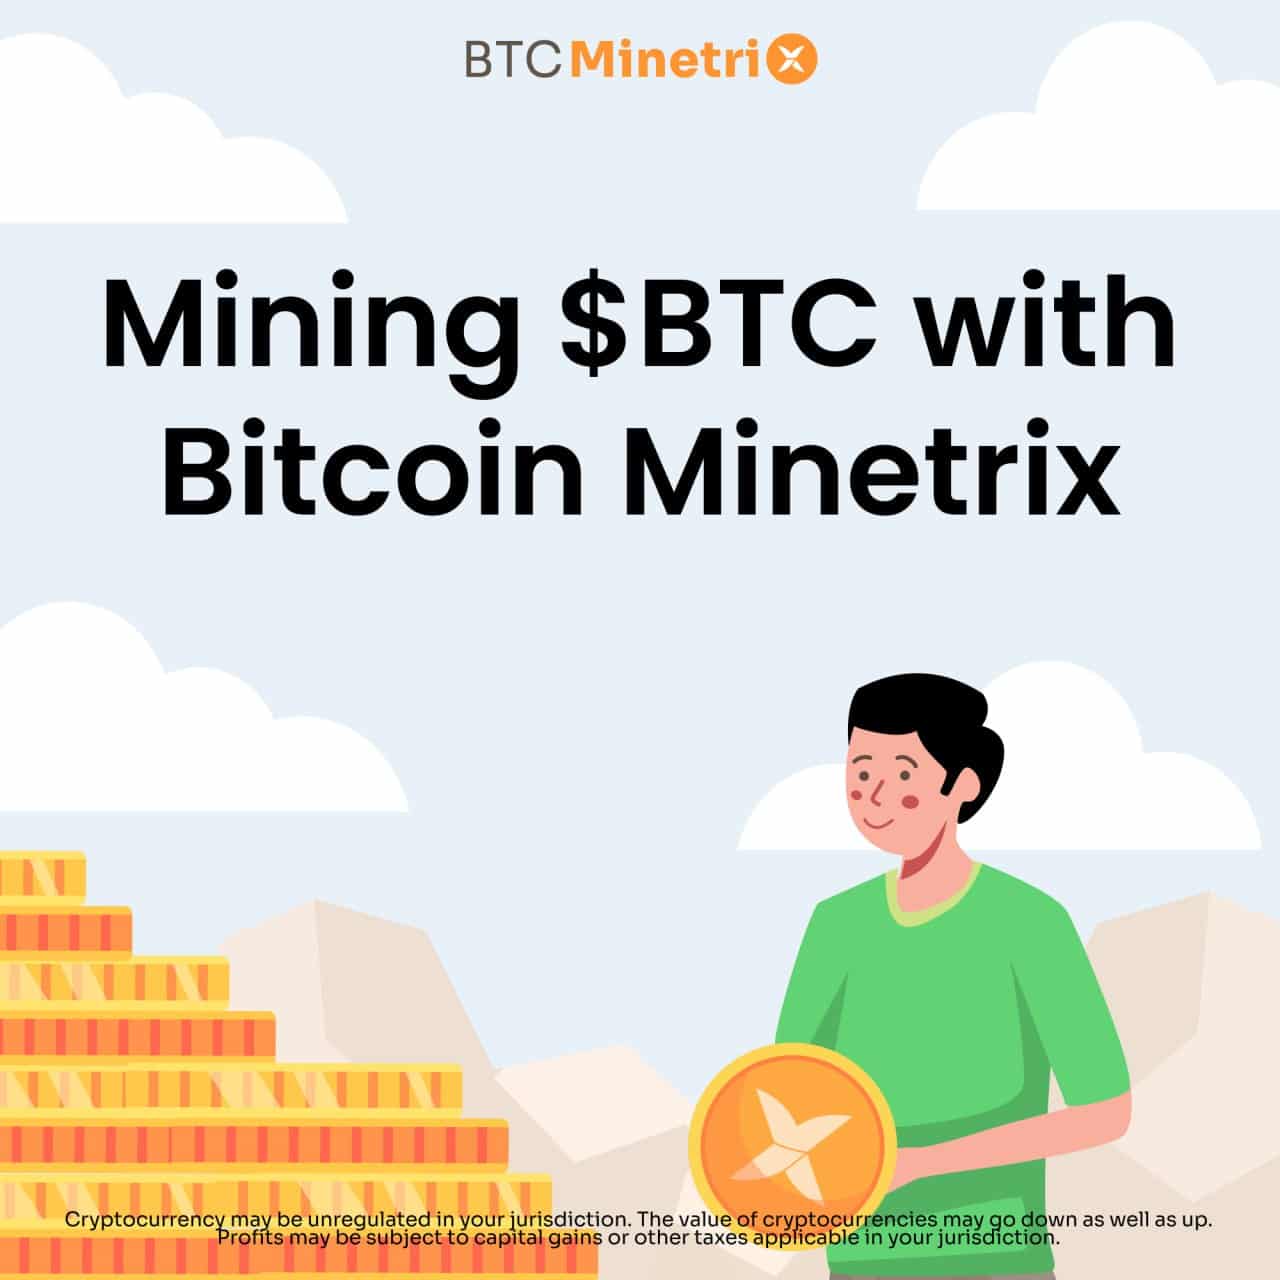 "mining BTC with Bitcoin Minetrix"